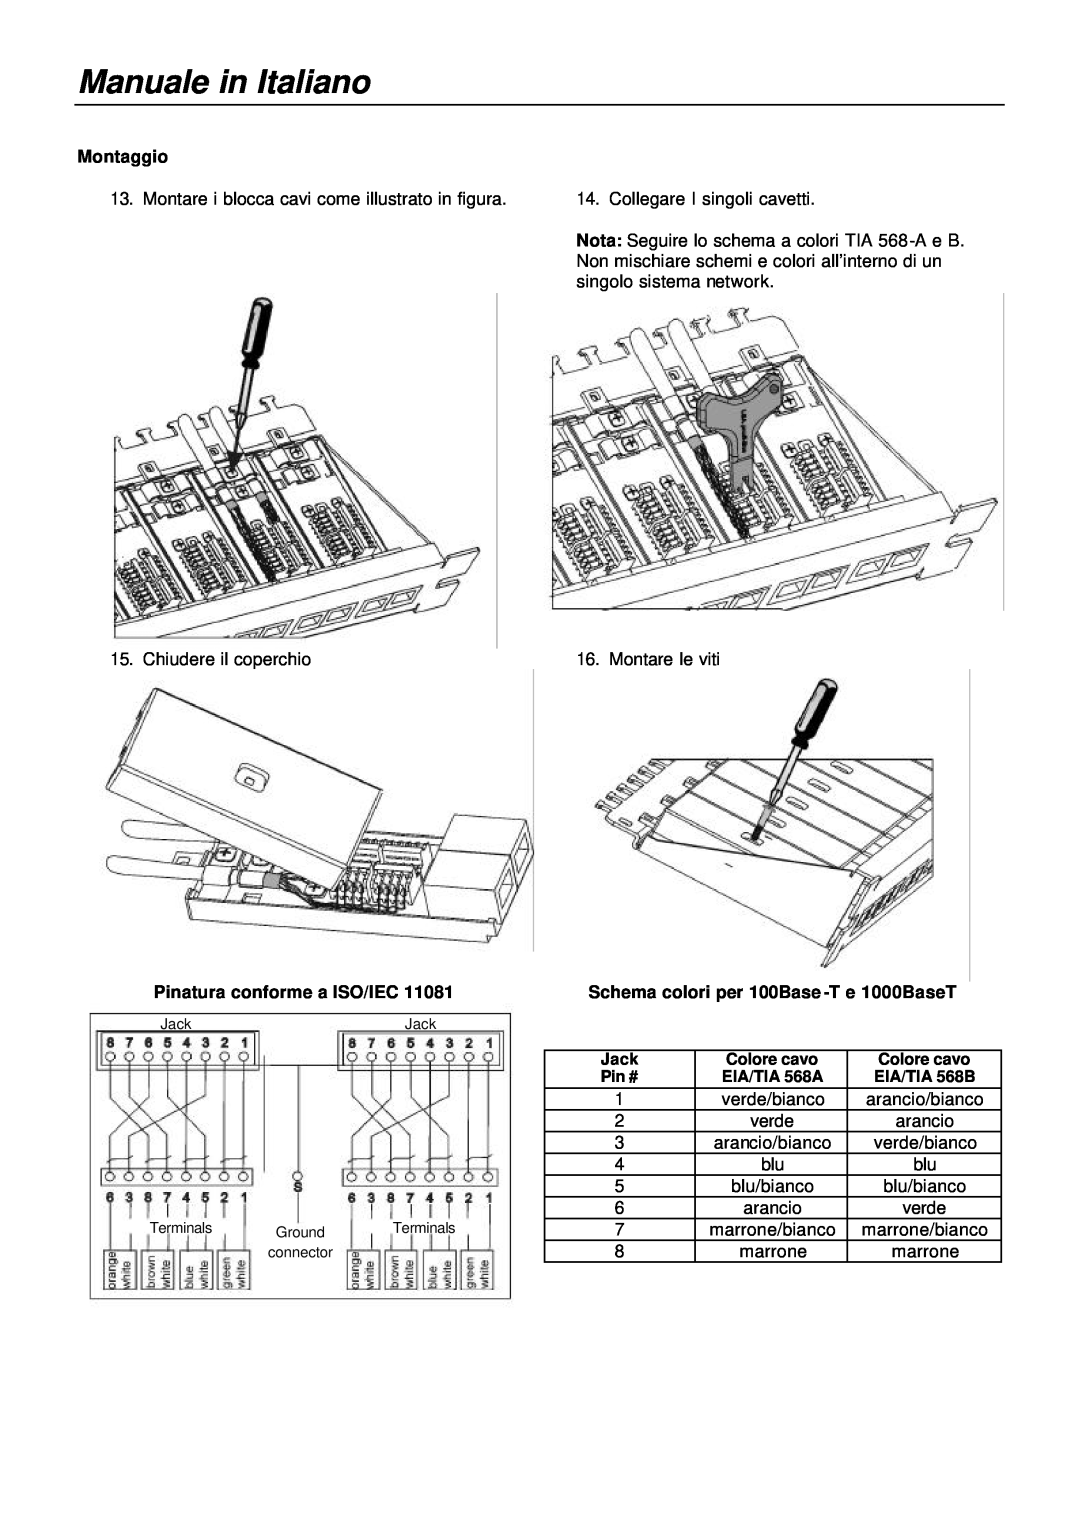 Lindy 20703, 20704 manual Manuale in Italiano, Montaggio, Pinatura conforme a ISO/IEC 